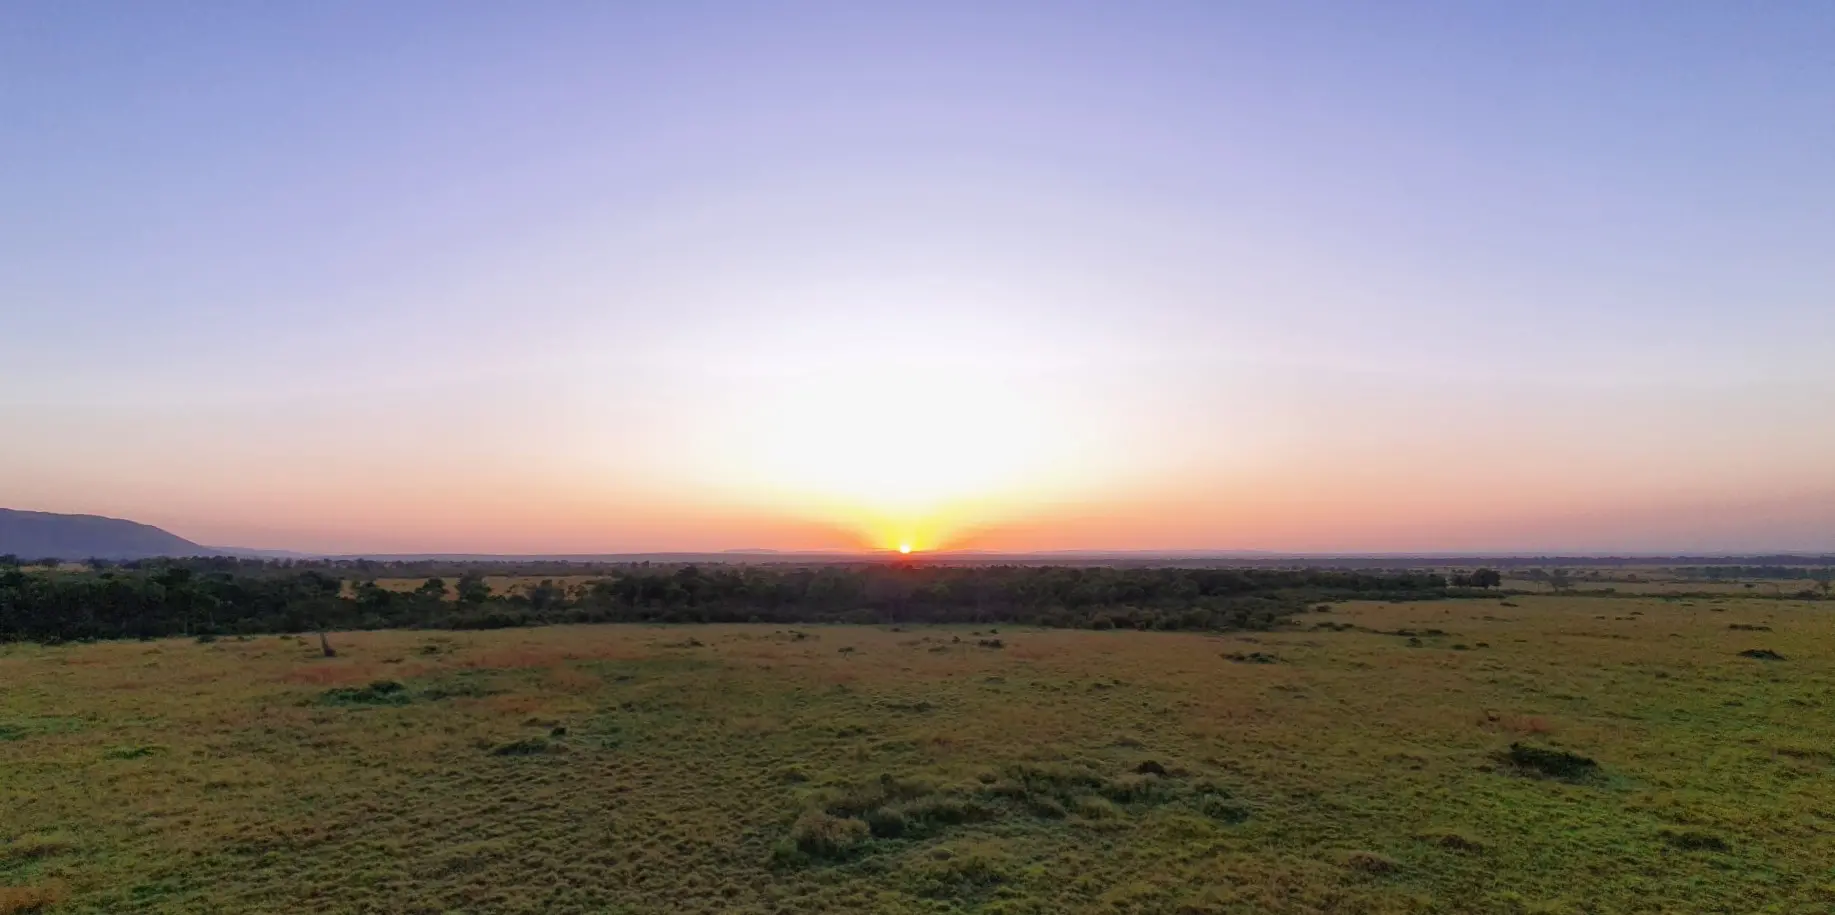 Sunrise in Maasai Mara